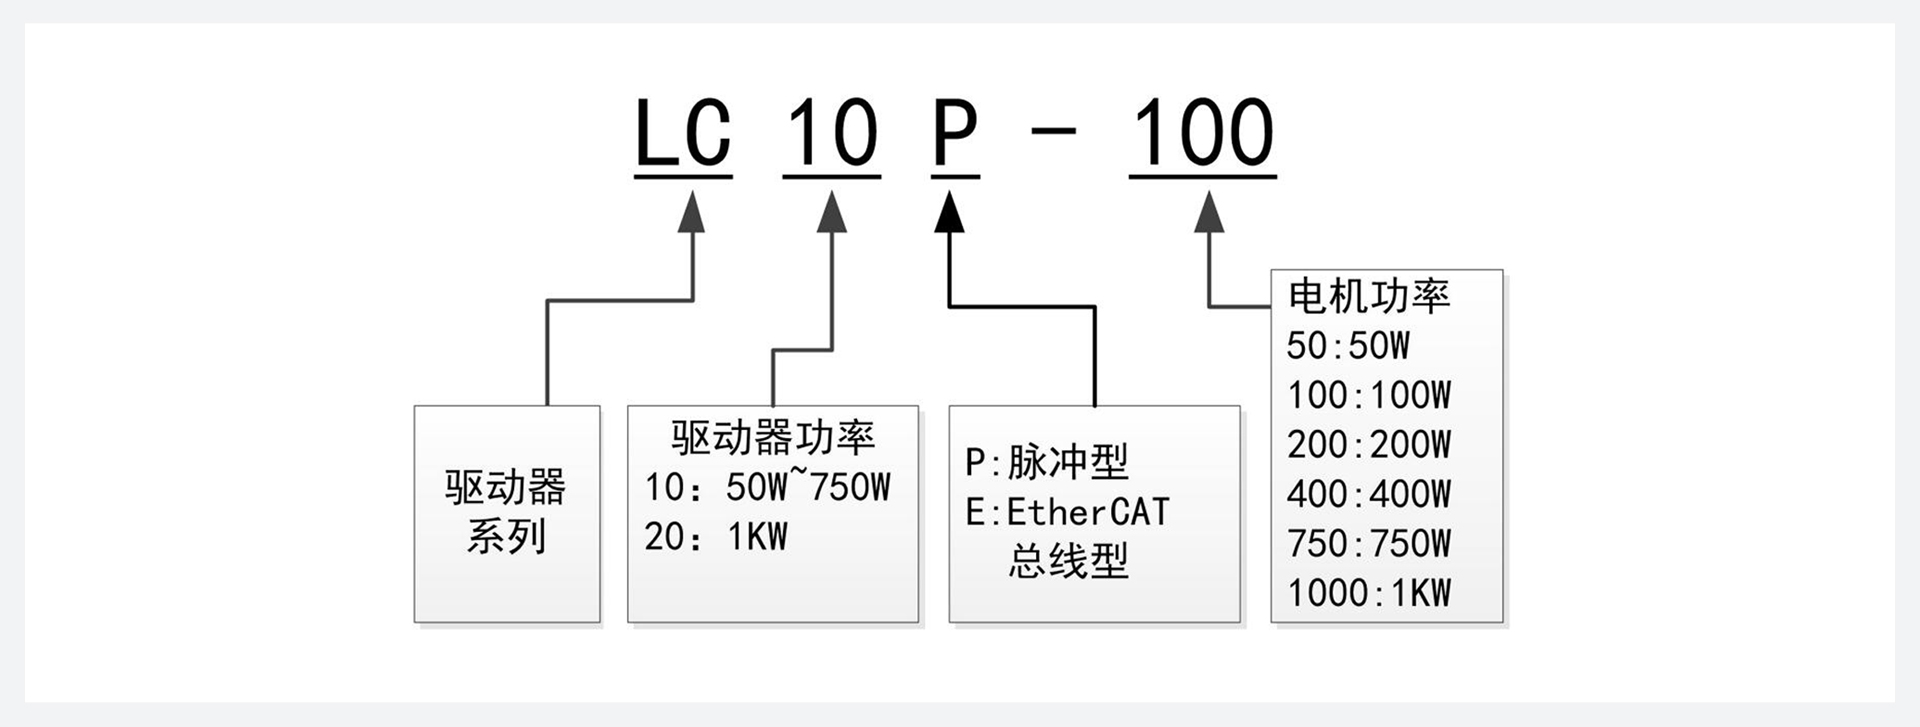 LC10P 系列交流伺服驱动器